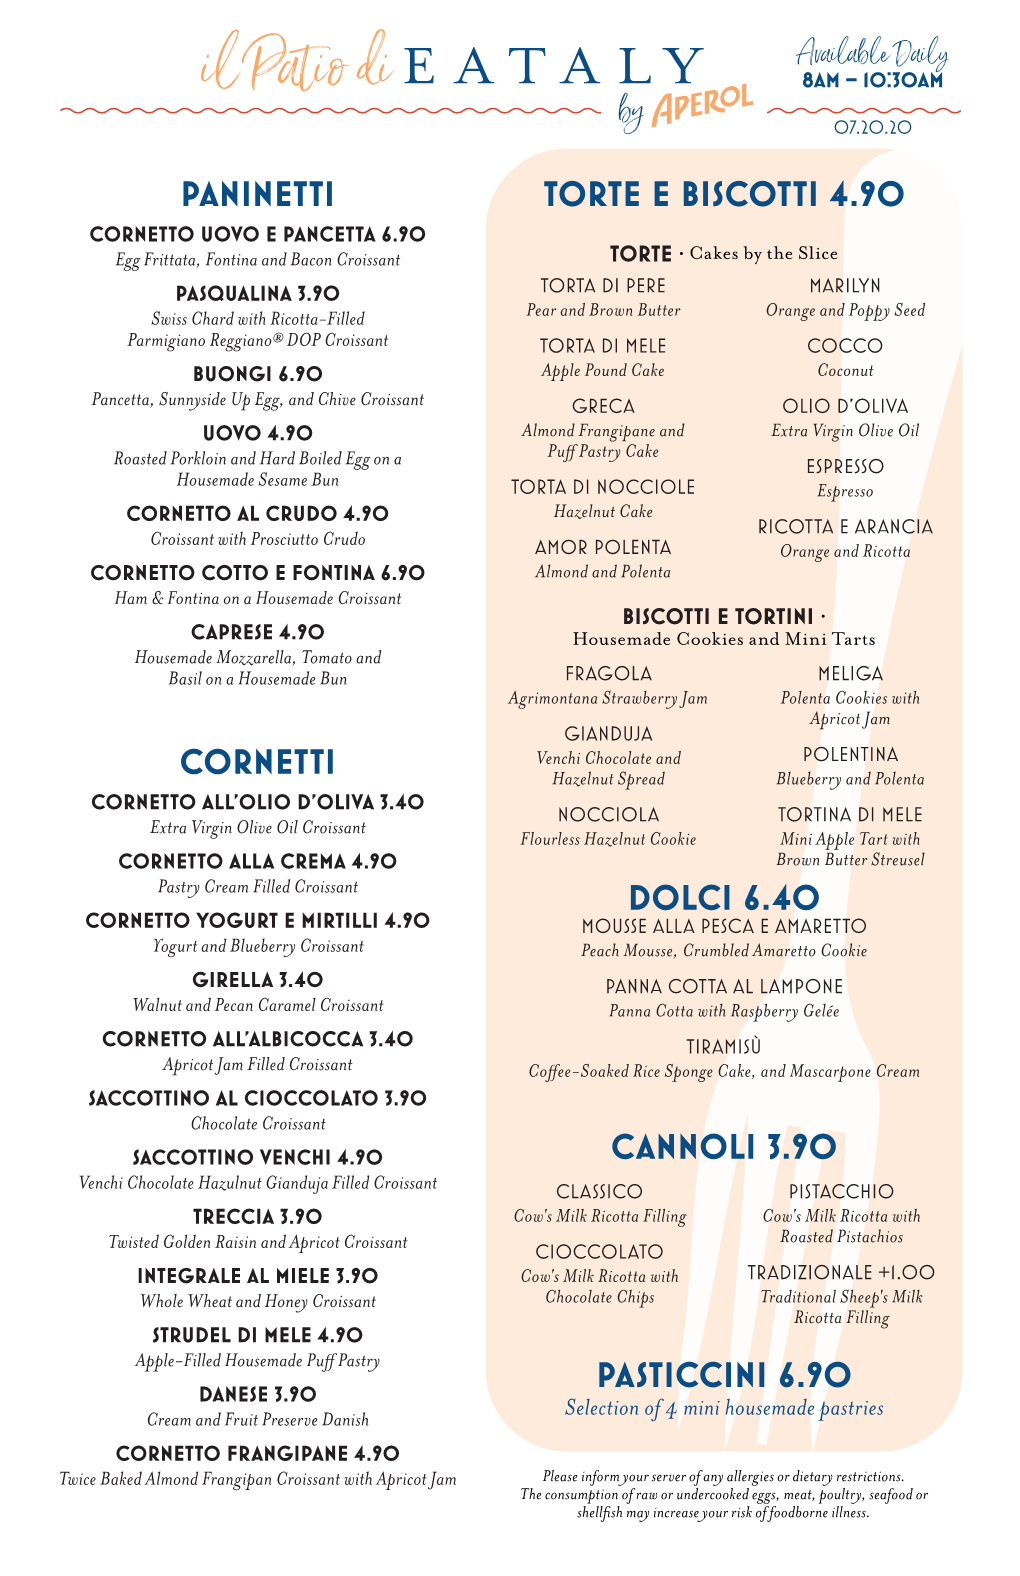 Torte E Biscotti 4.90 Dolci 6.40 Cannoli 3.90 Pasticcini 6.90